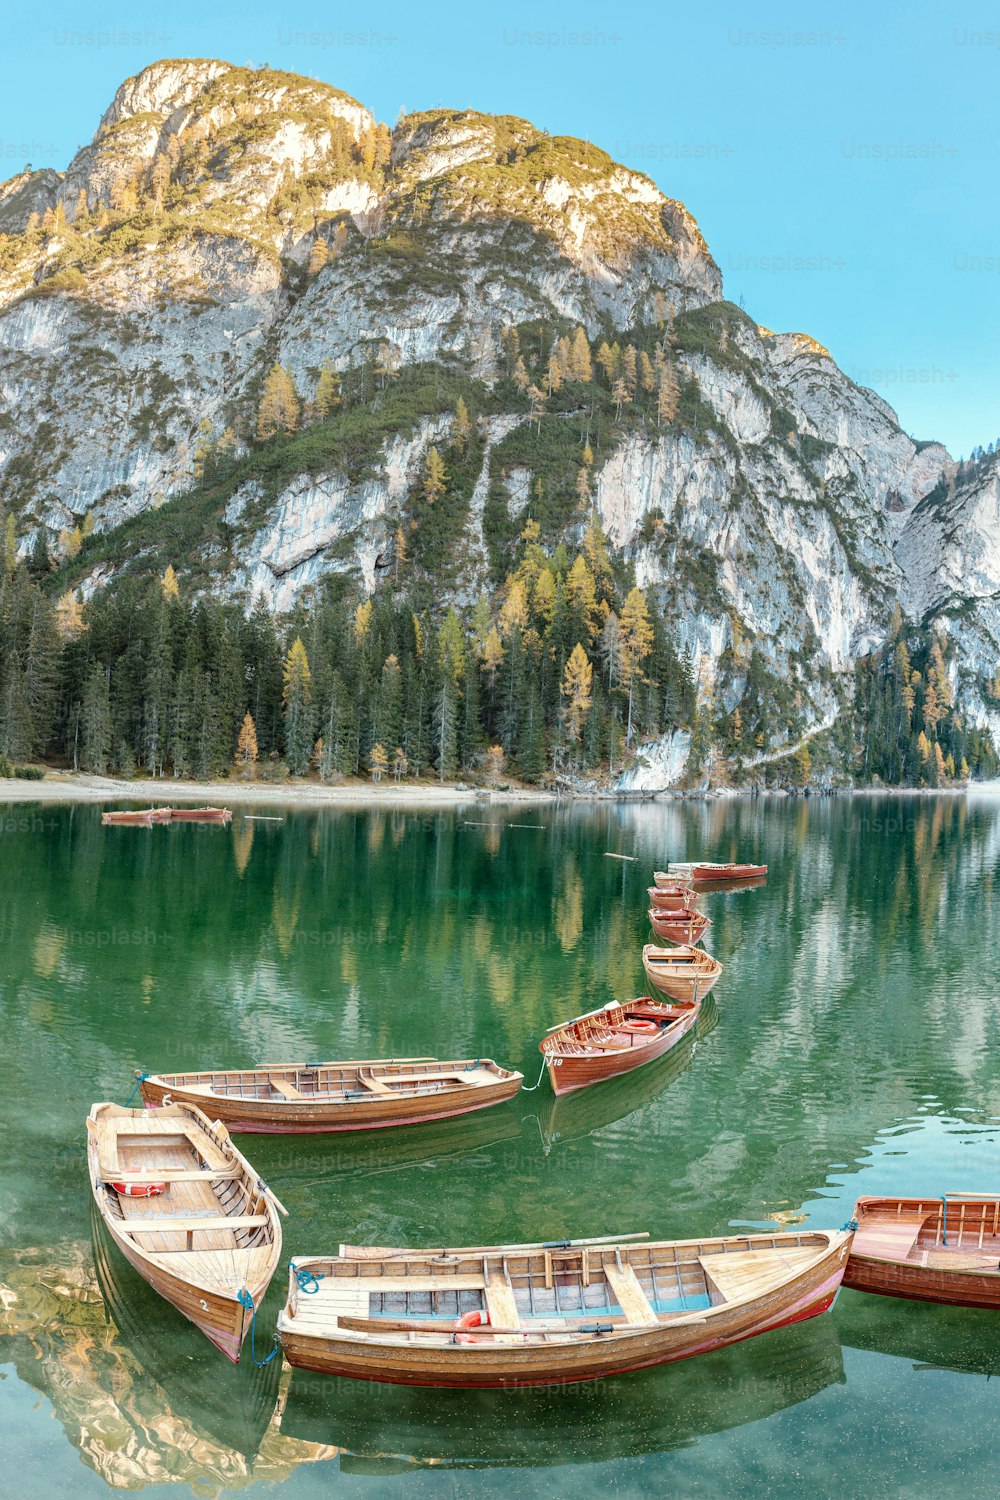 Un mágico paisaje panorámico con colores tranquilos del famoso lago Braies en los Alpes Dolomitas durante la temporada de otoño. Una atracción turística popular